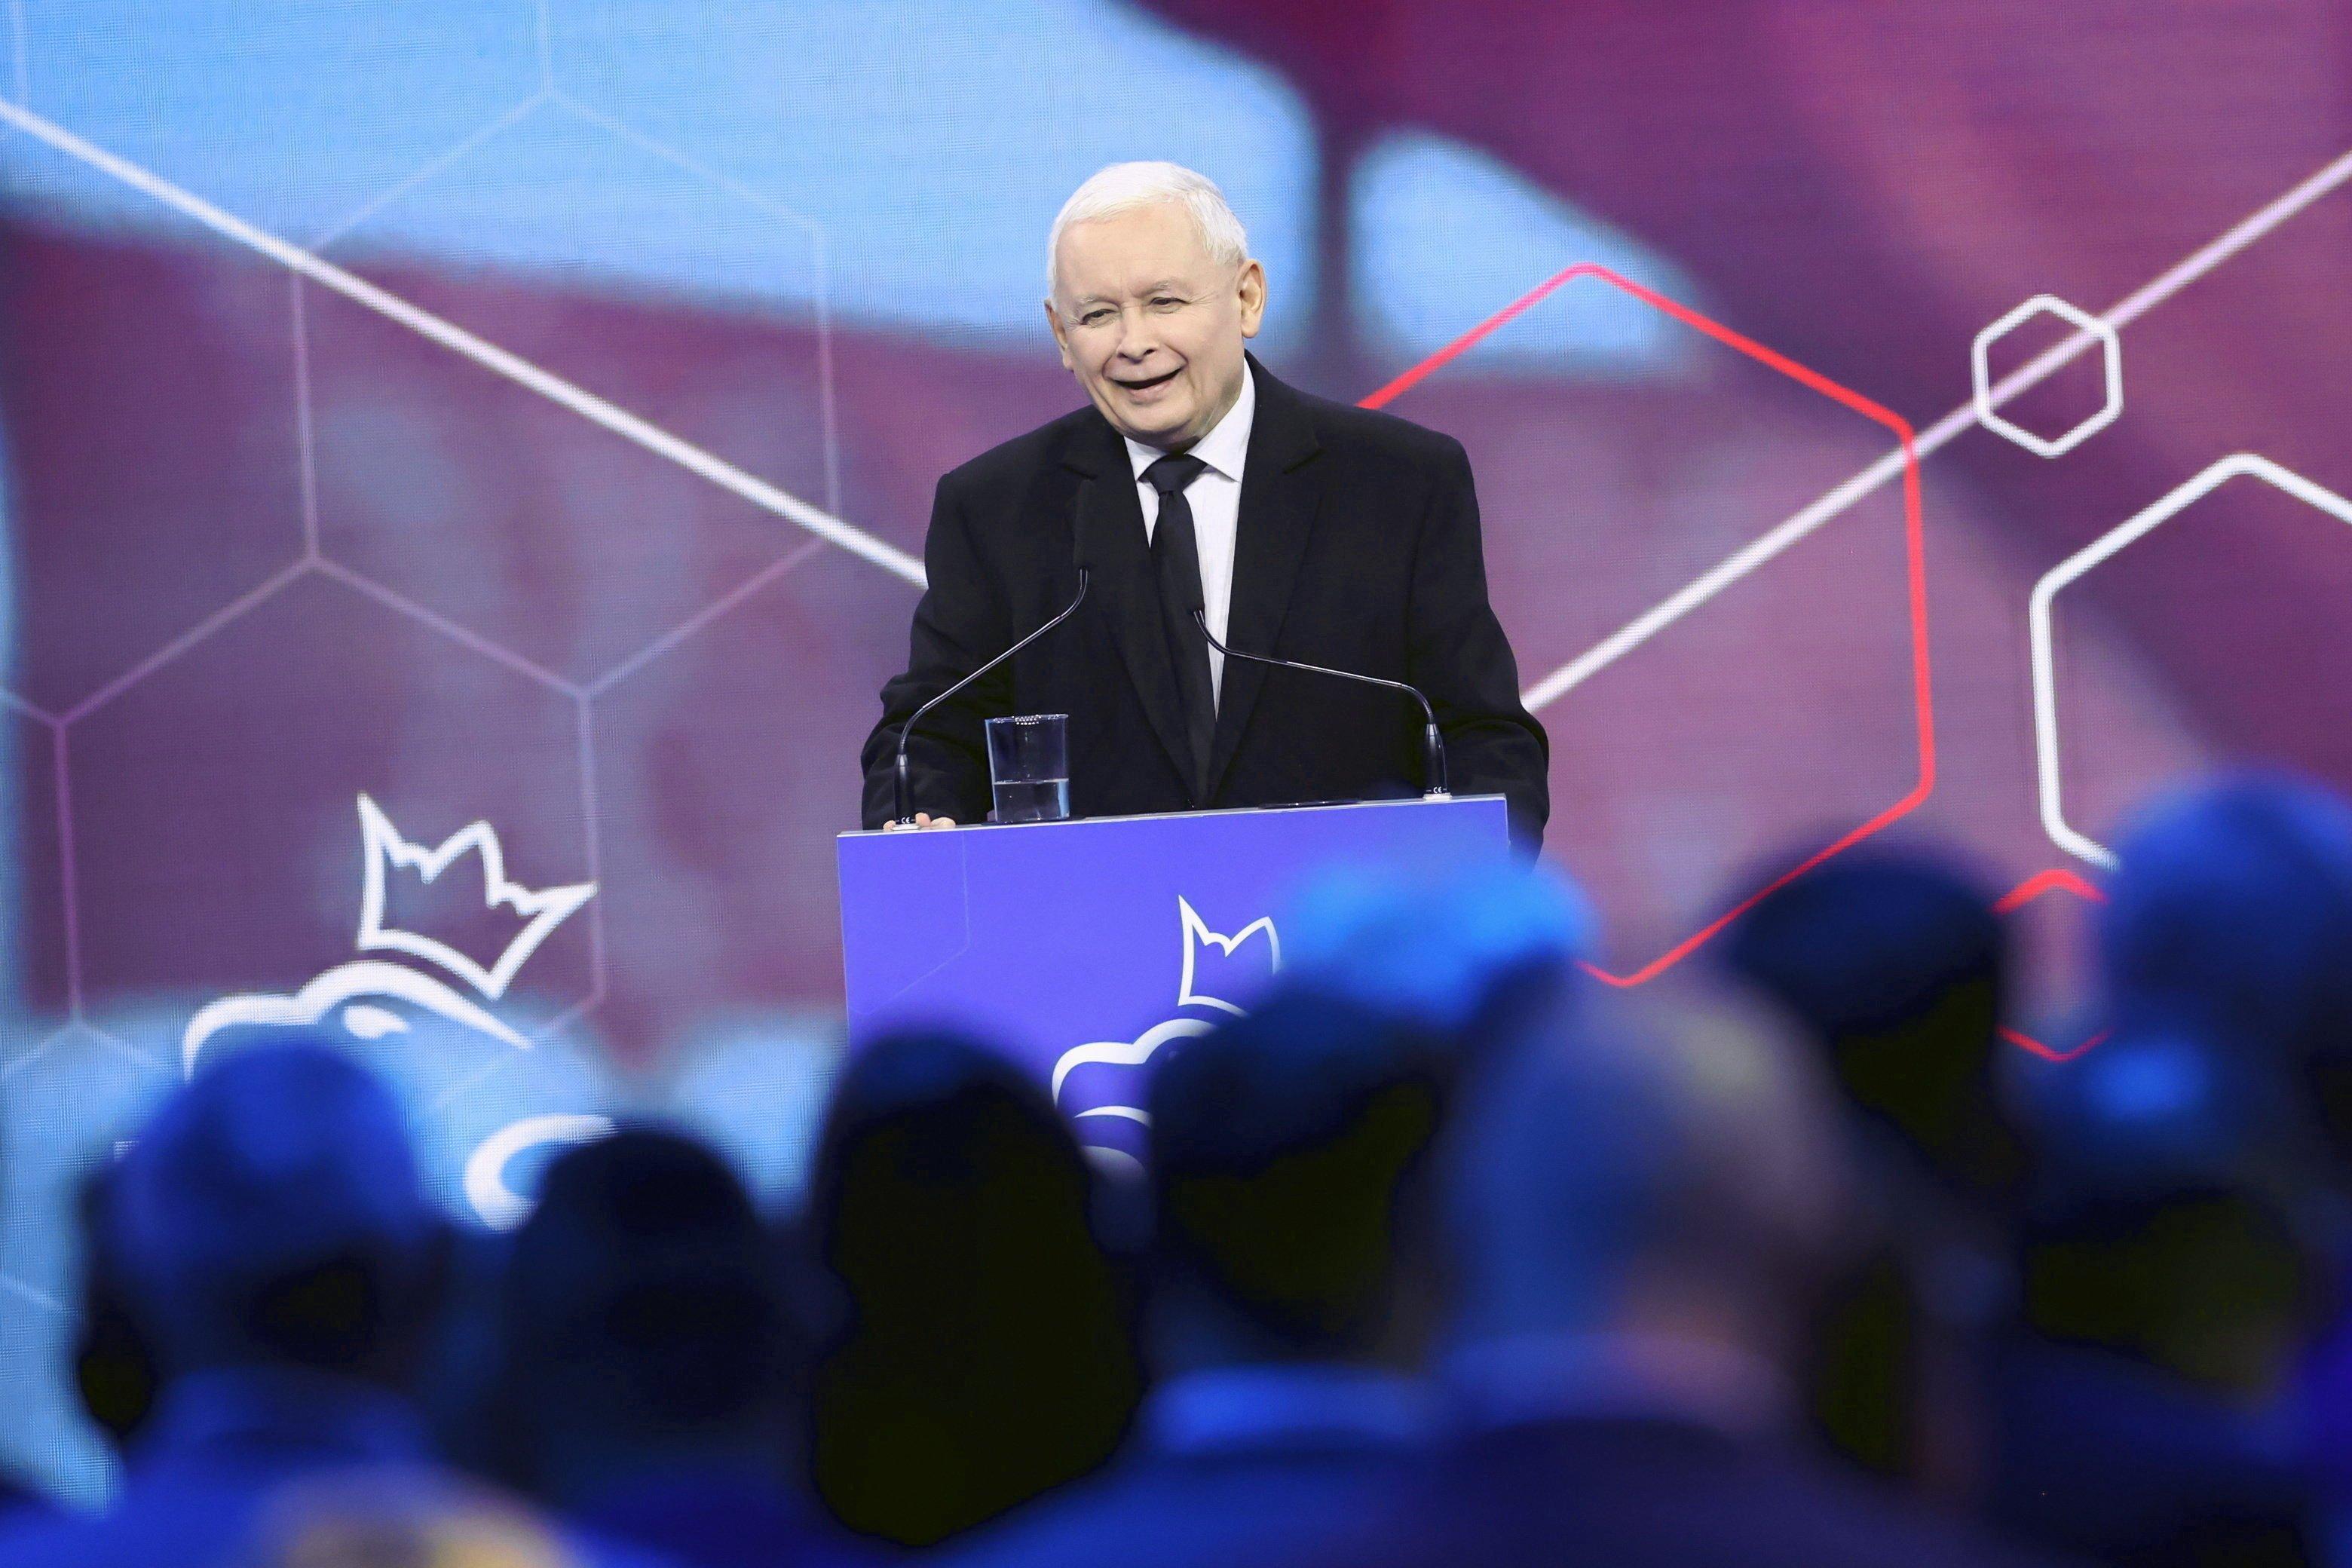 Mężczyzna, Jarosąłw Kaczyński, przemawia na tle geometrycznych figur